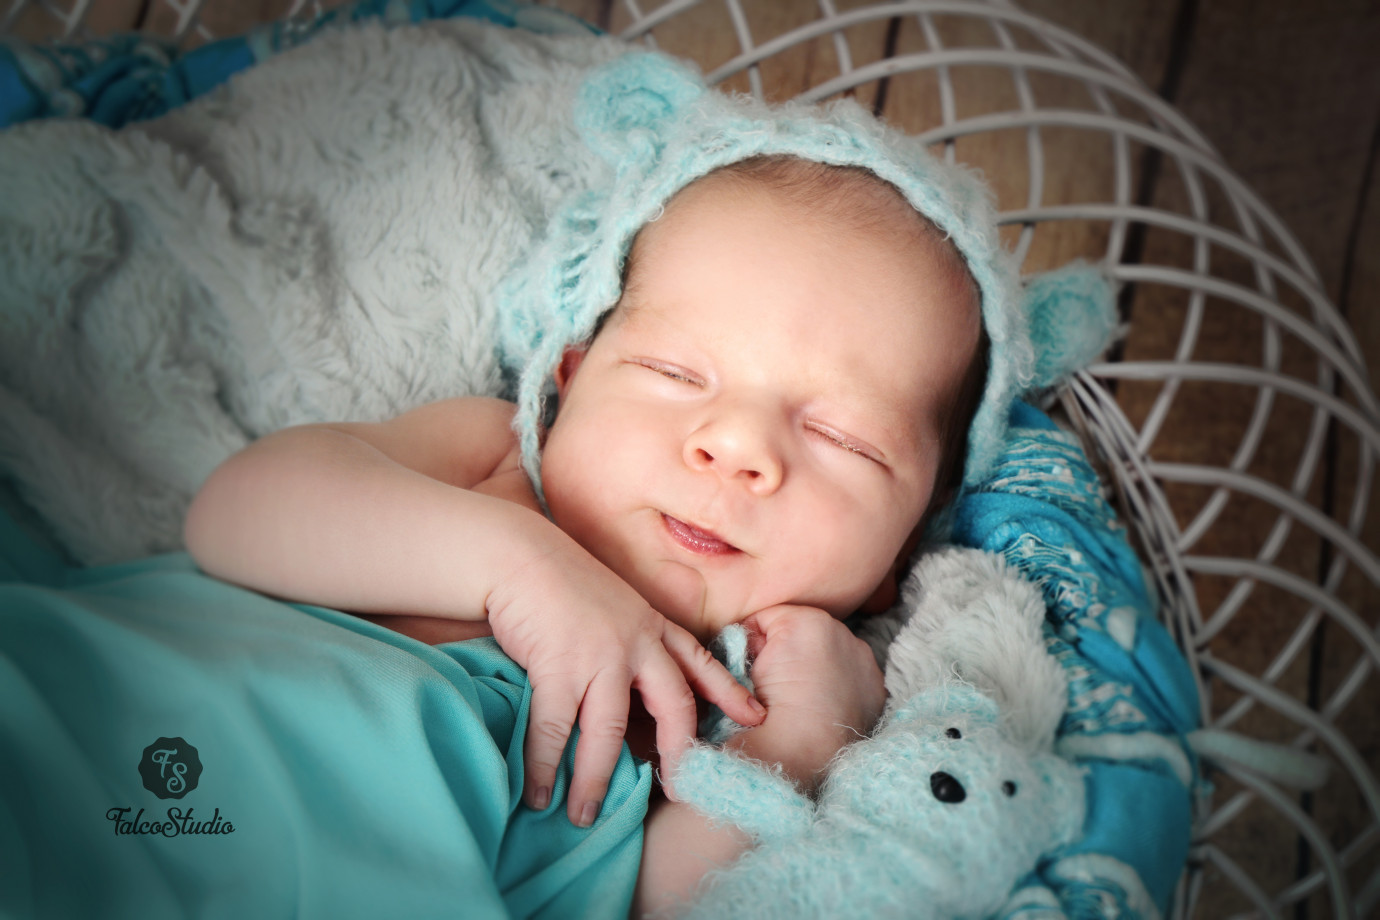 fotograf laziska-gorne falco-studio-dorota-jastrzebska portfolio zdjecia noworodkow sesje noworodkowe niemowlę